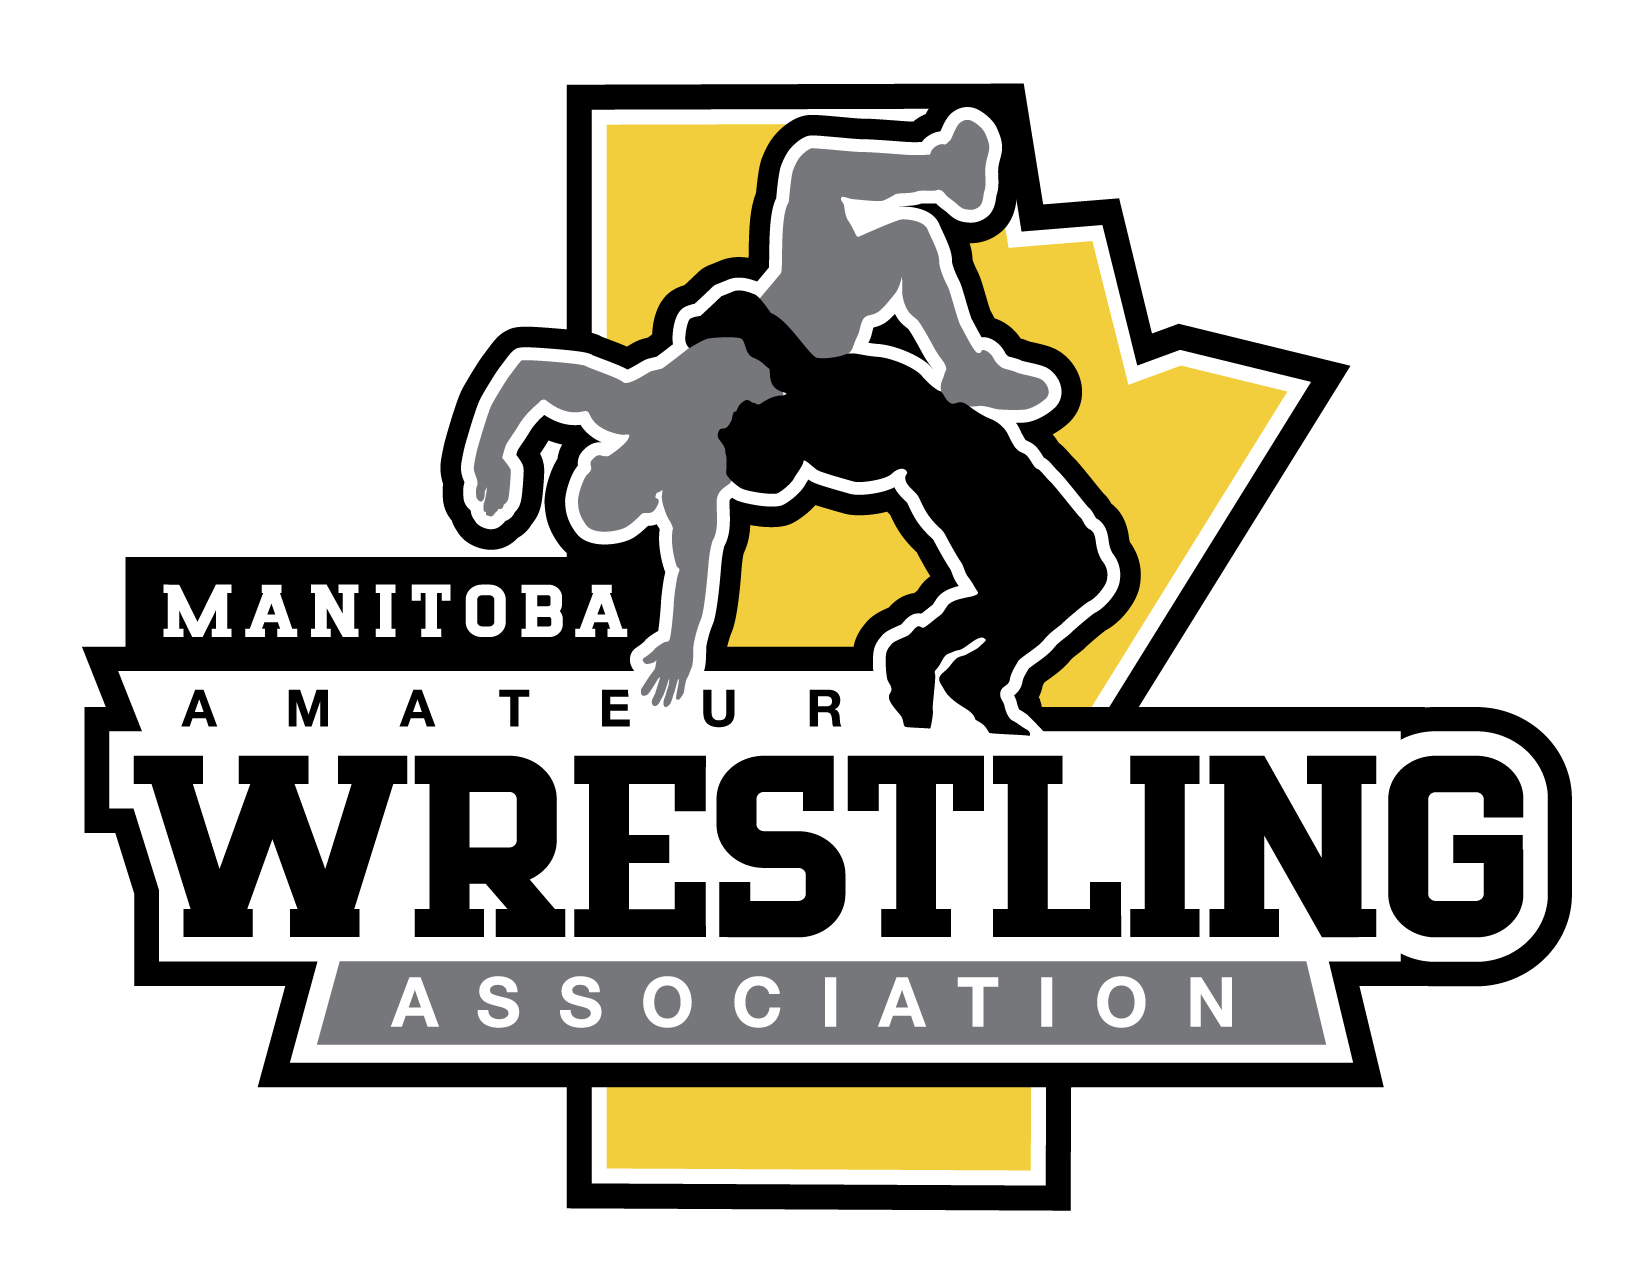 Manitoba Amateur Wrestling Association